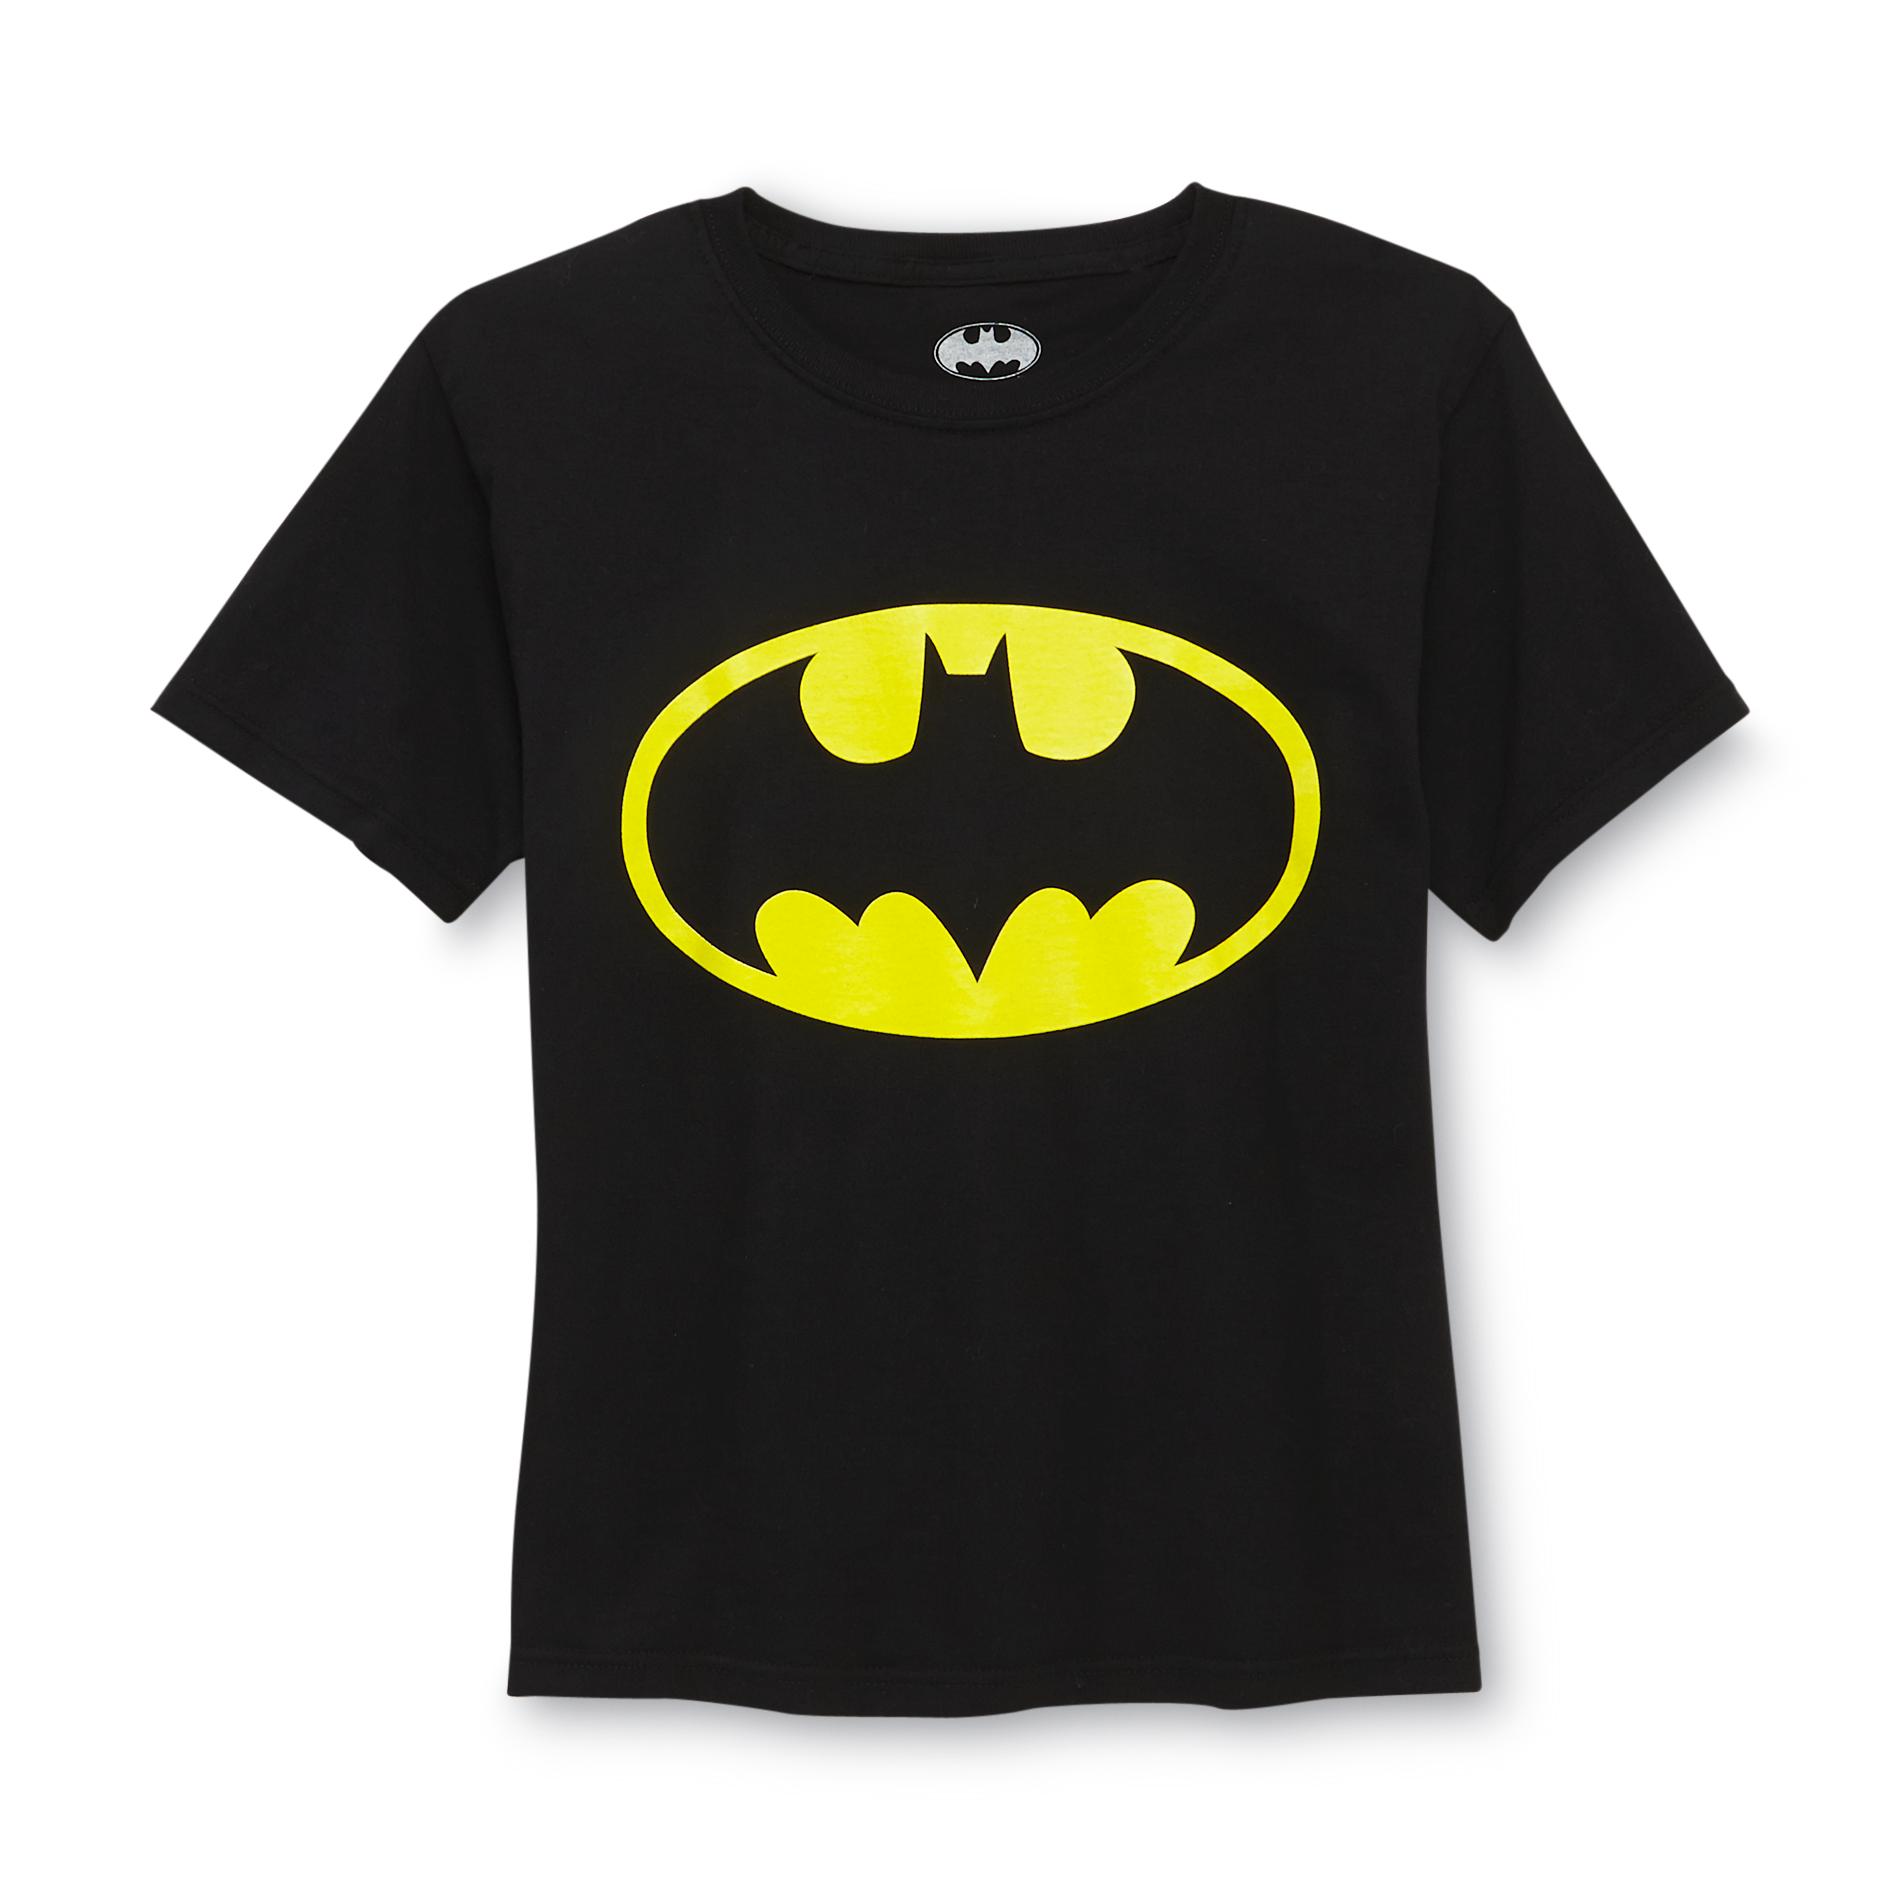 DC Comics Boy's Graphic T-Shirt - Bat Symbol